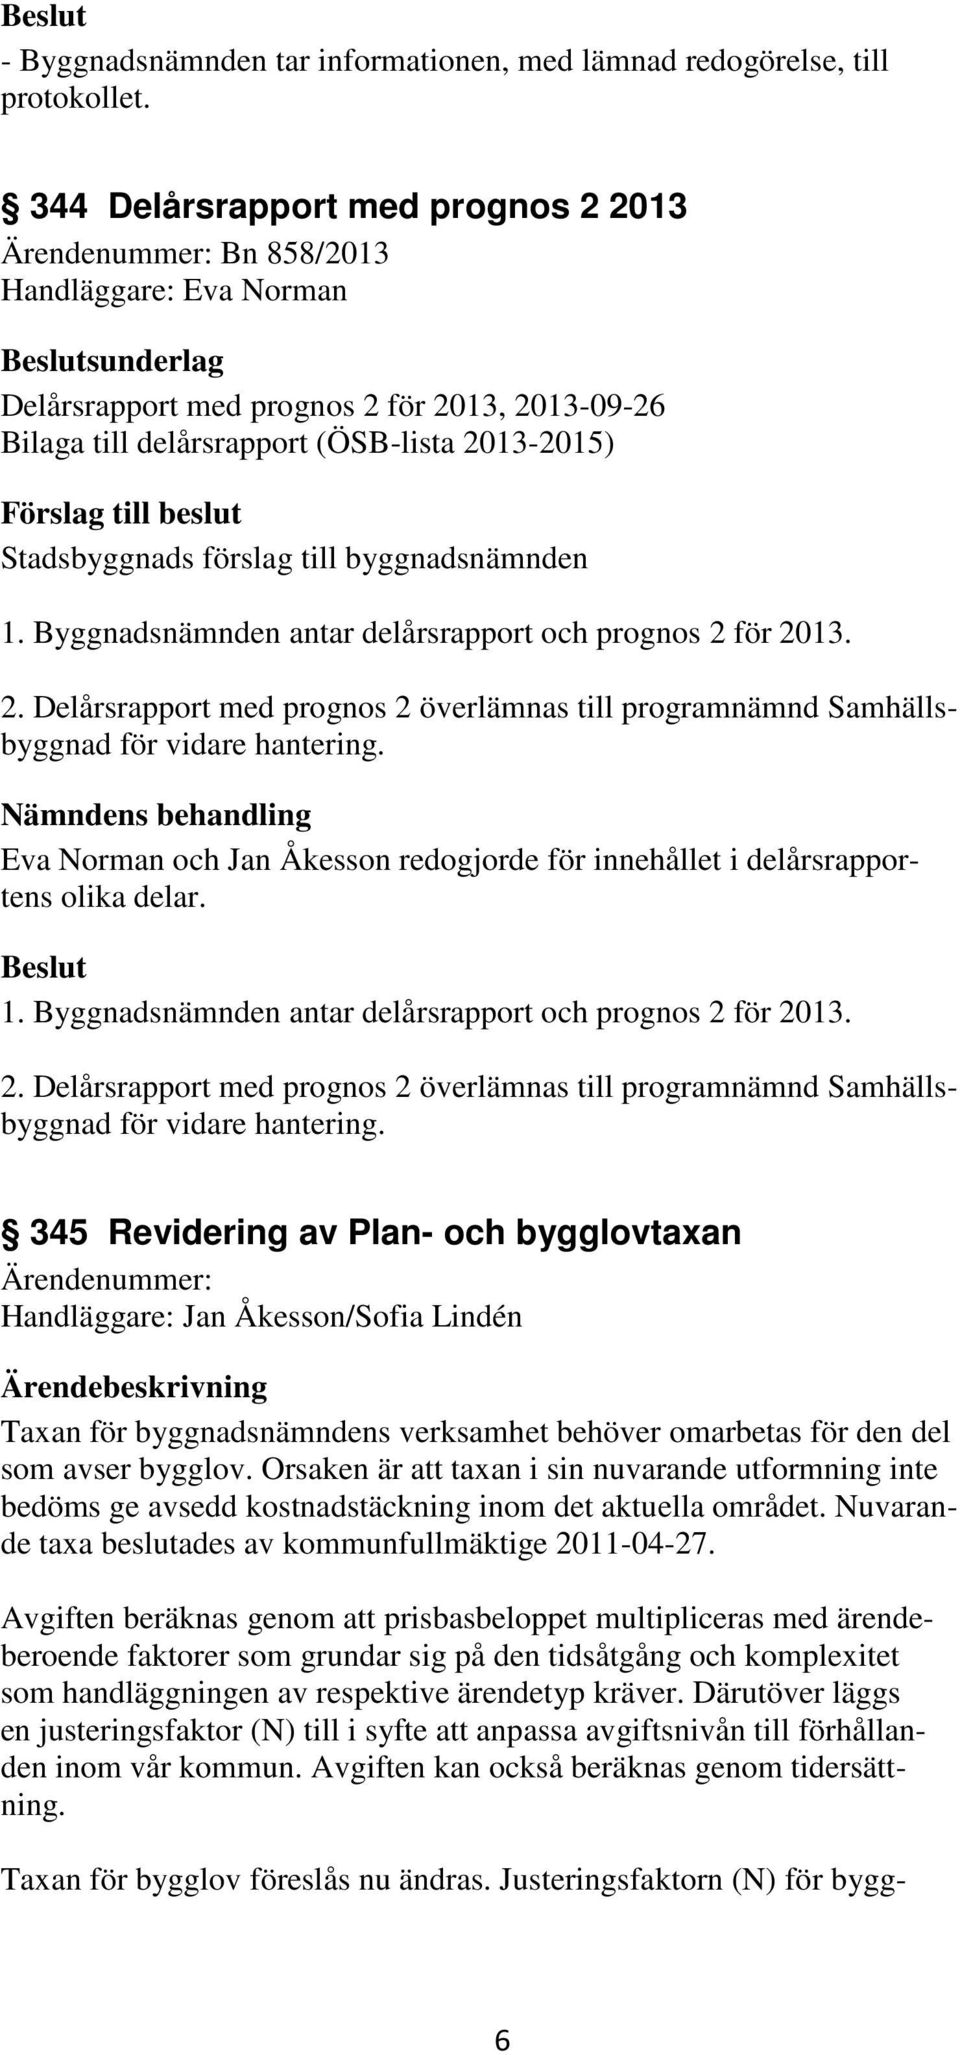 Byggnadsnämnden antar delårsrapport och prognos 2 för 2013. 2. Delårsrapport med prognos 2 överlämnas till programnämnd Samhällsbyggnad för vidare hantering.